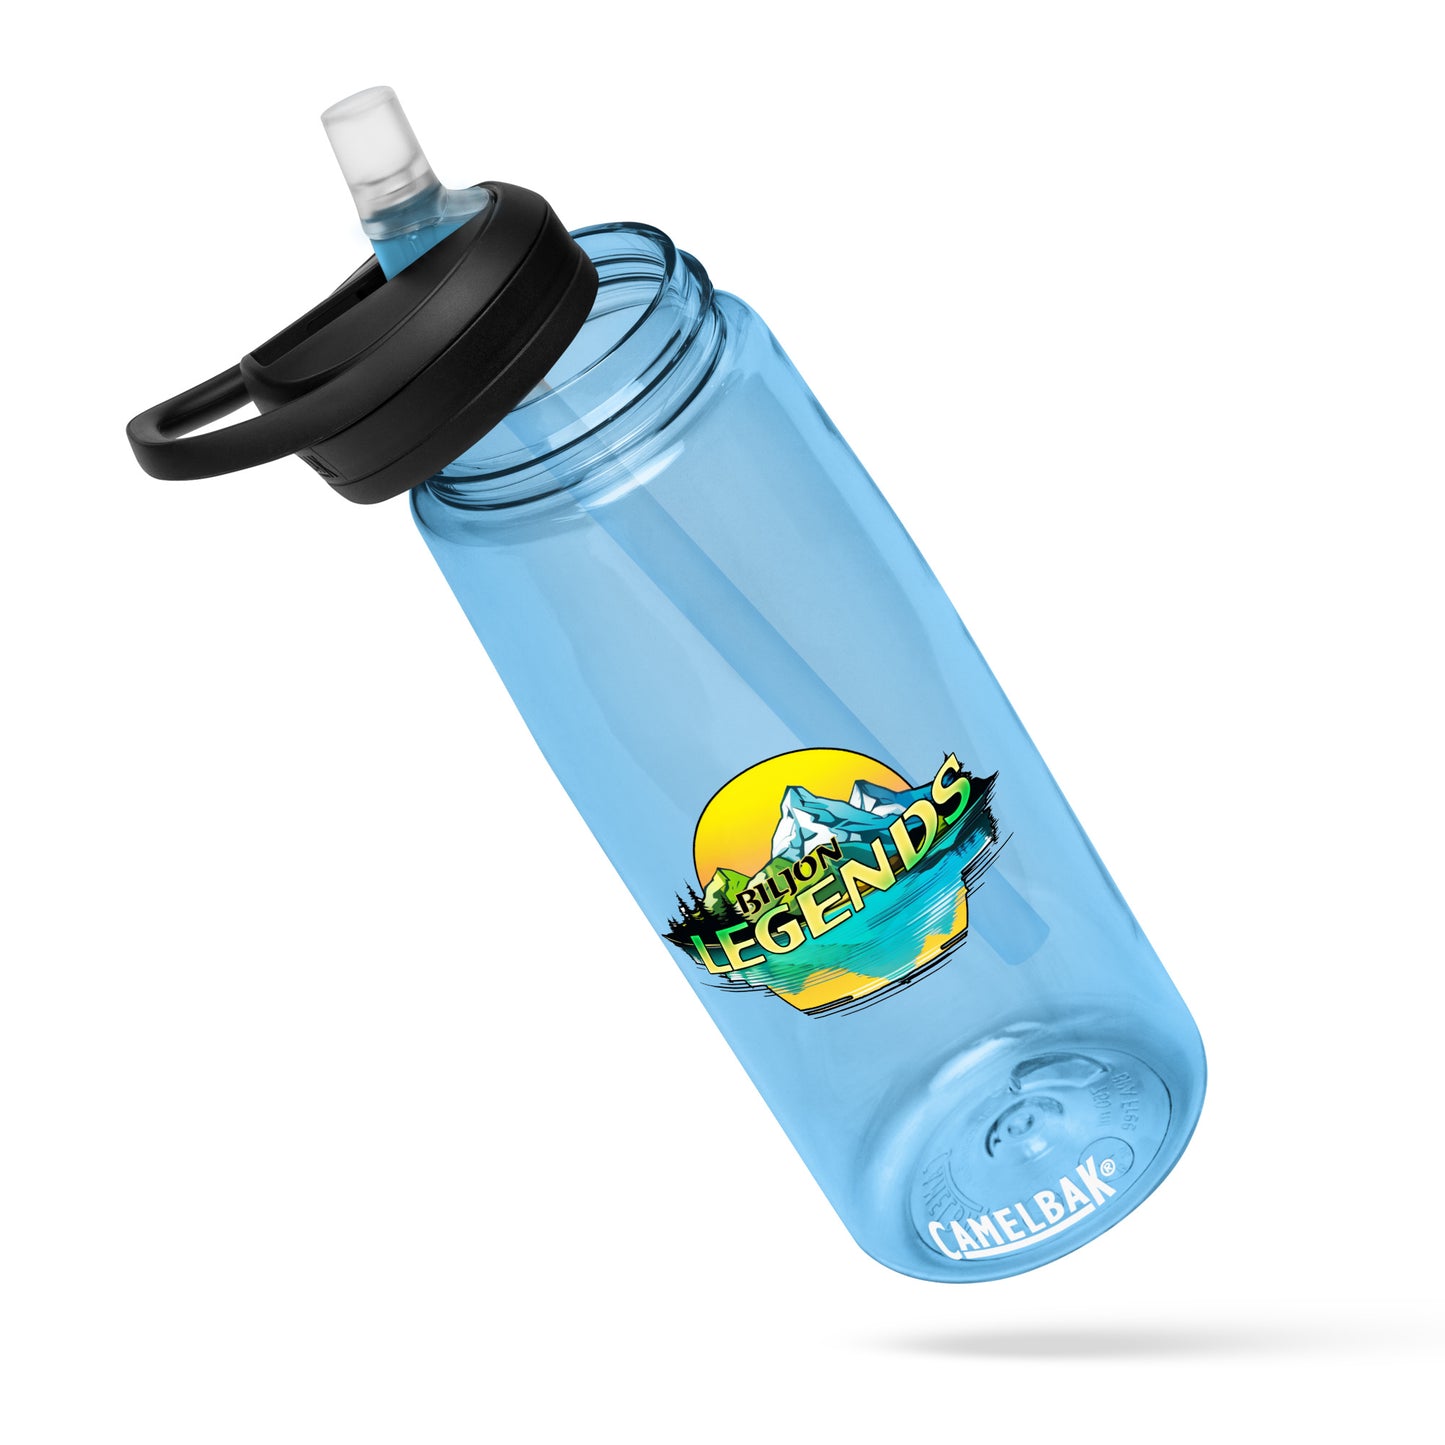 BILJON Legends Sports water bottle